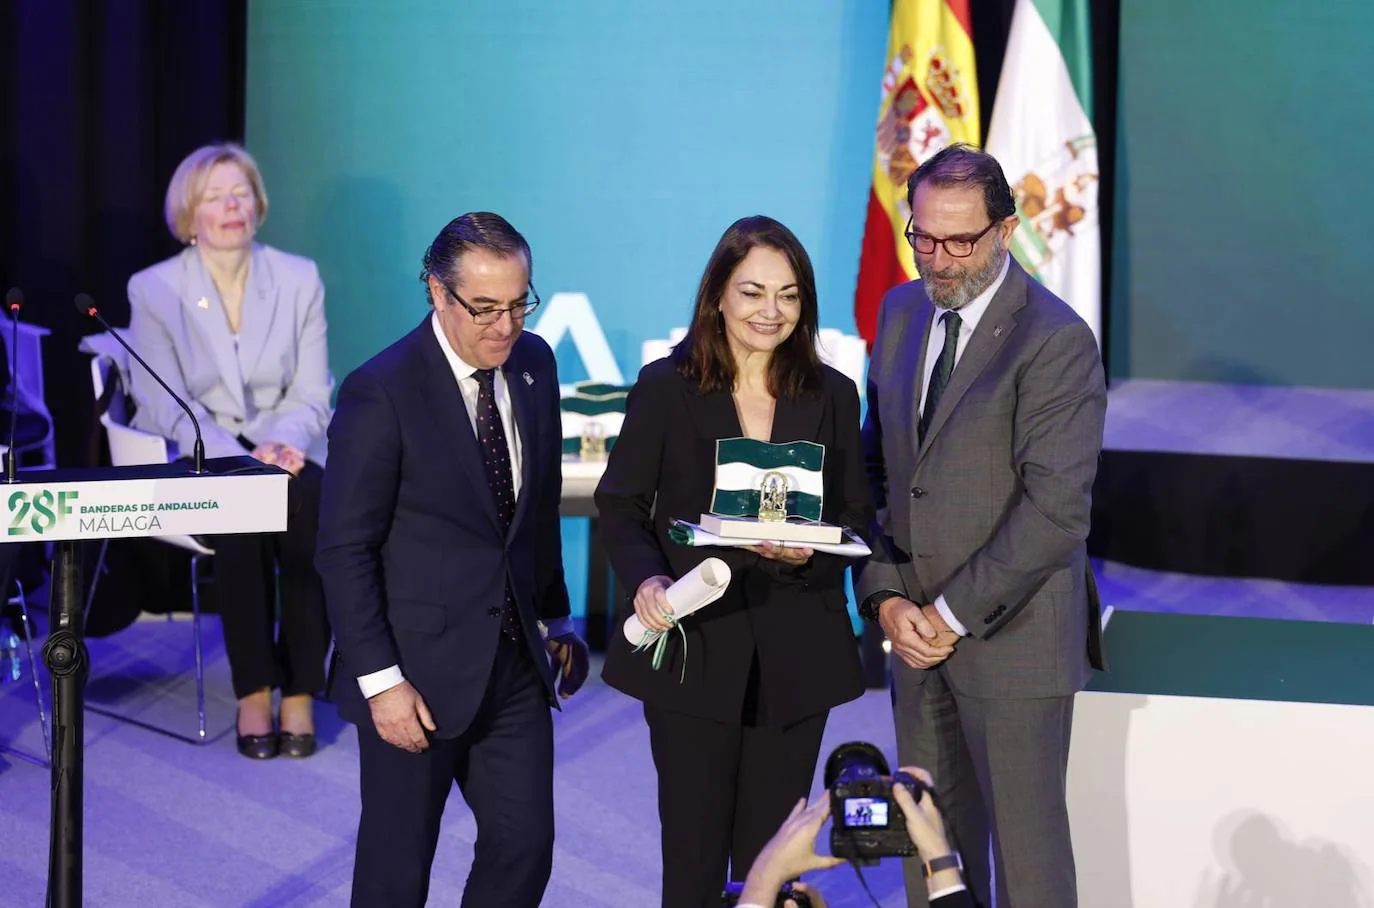 La catedrática de la UMA Gloria Corpas recibe la Bandera de la Investigación, la Ciencia y la Salud. Le entregan el premio los delegados Carlos Bautista y Miguel Briones